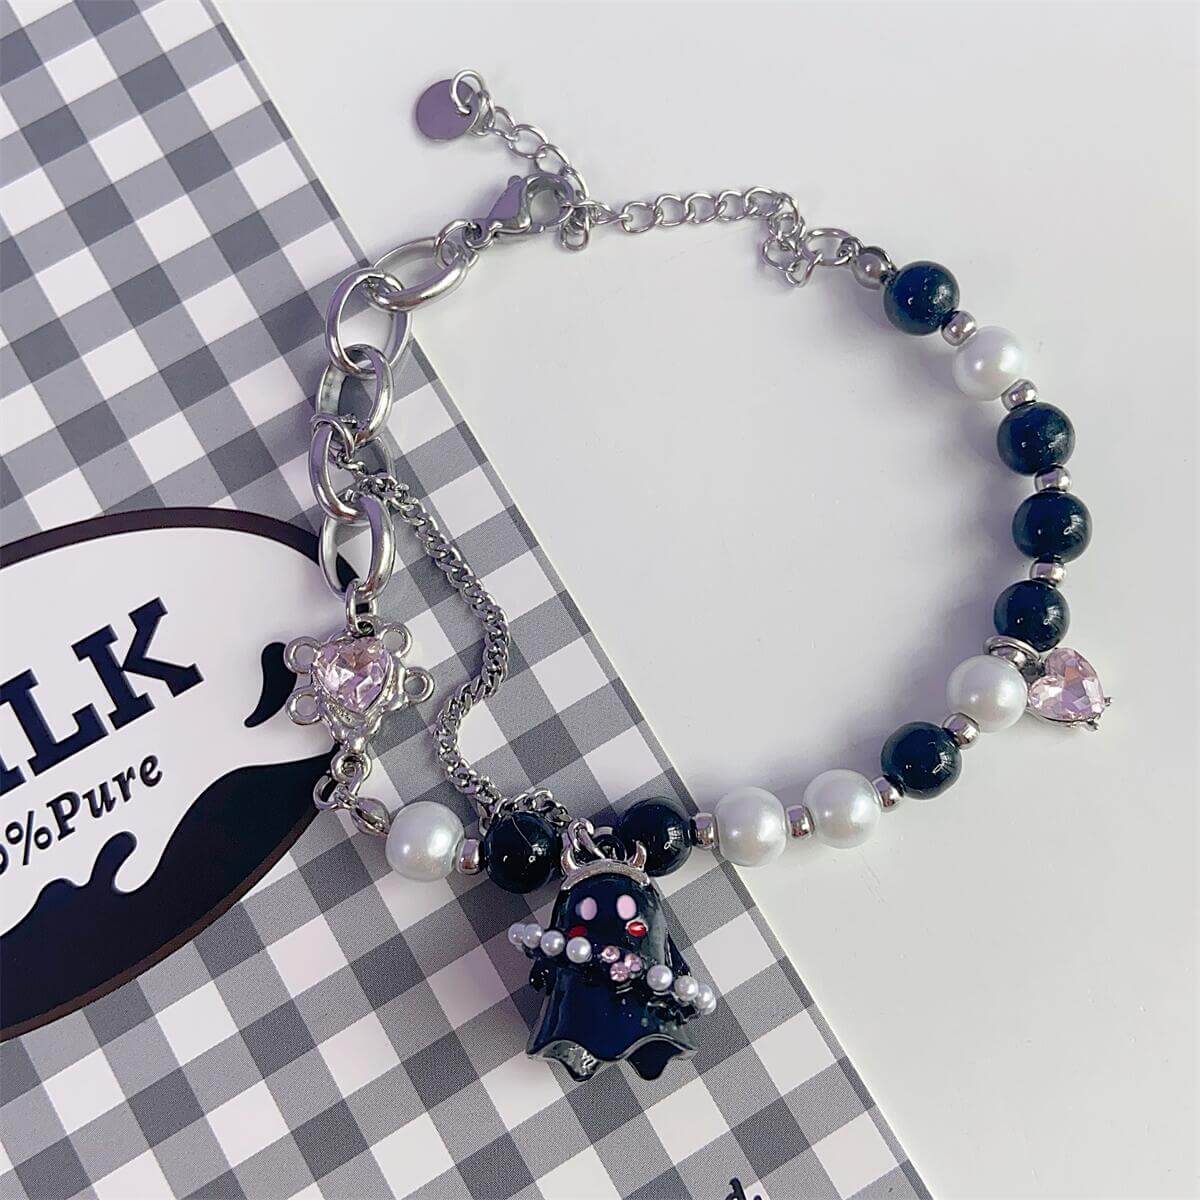 cutiekill-spooky-ghost-necklace-bracelet-ah0453